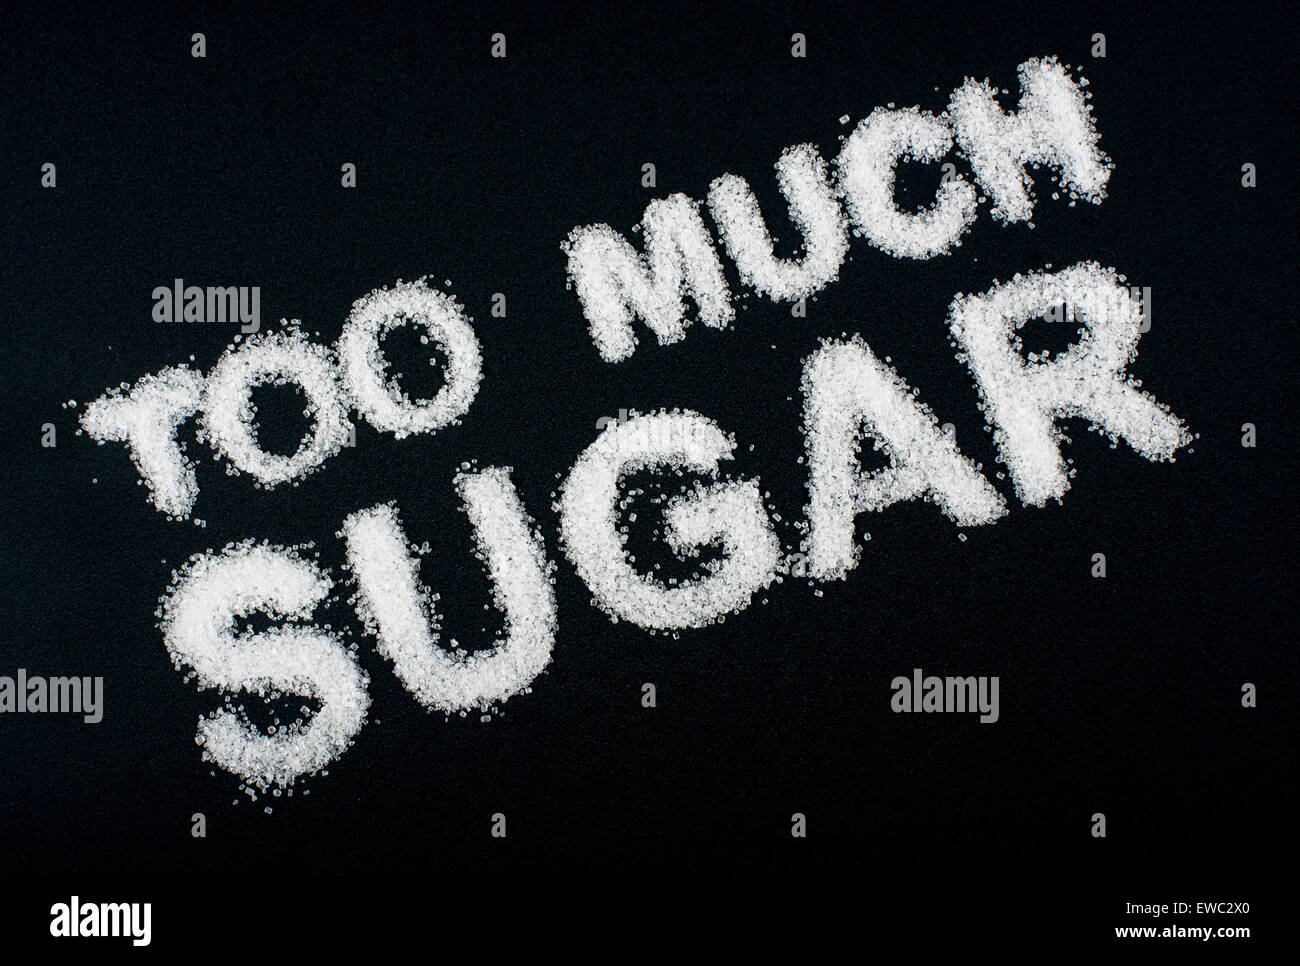 Unhealthy food concept - sugar Stock Photo